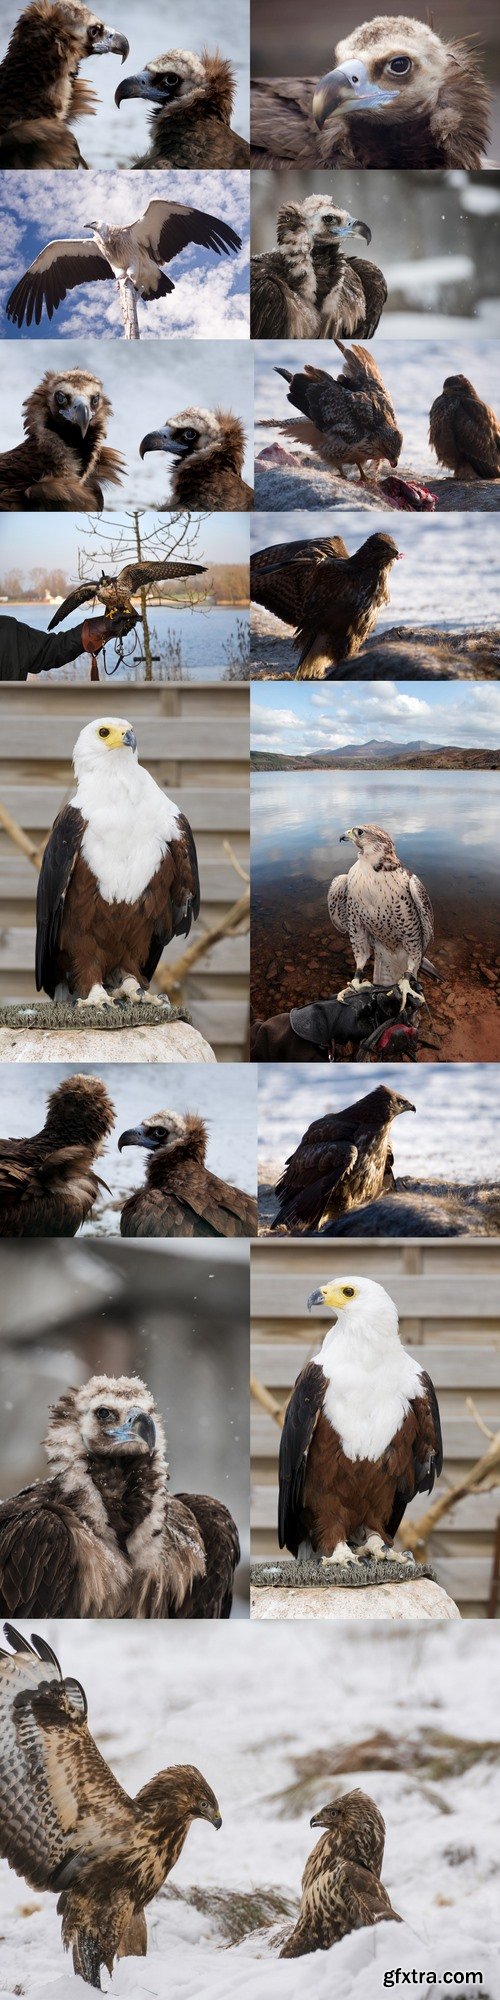 Cinereous Vulture - European Black Vulture